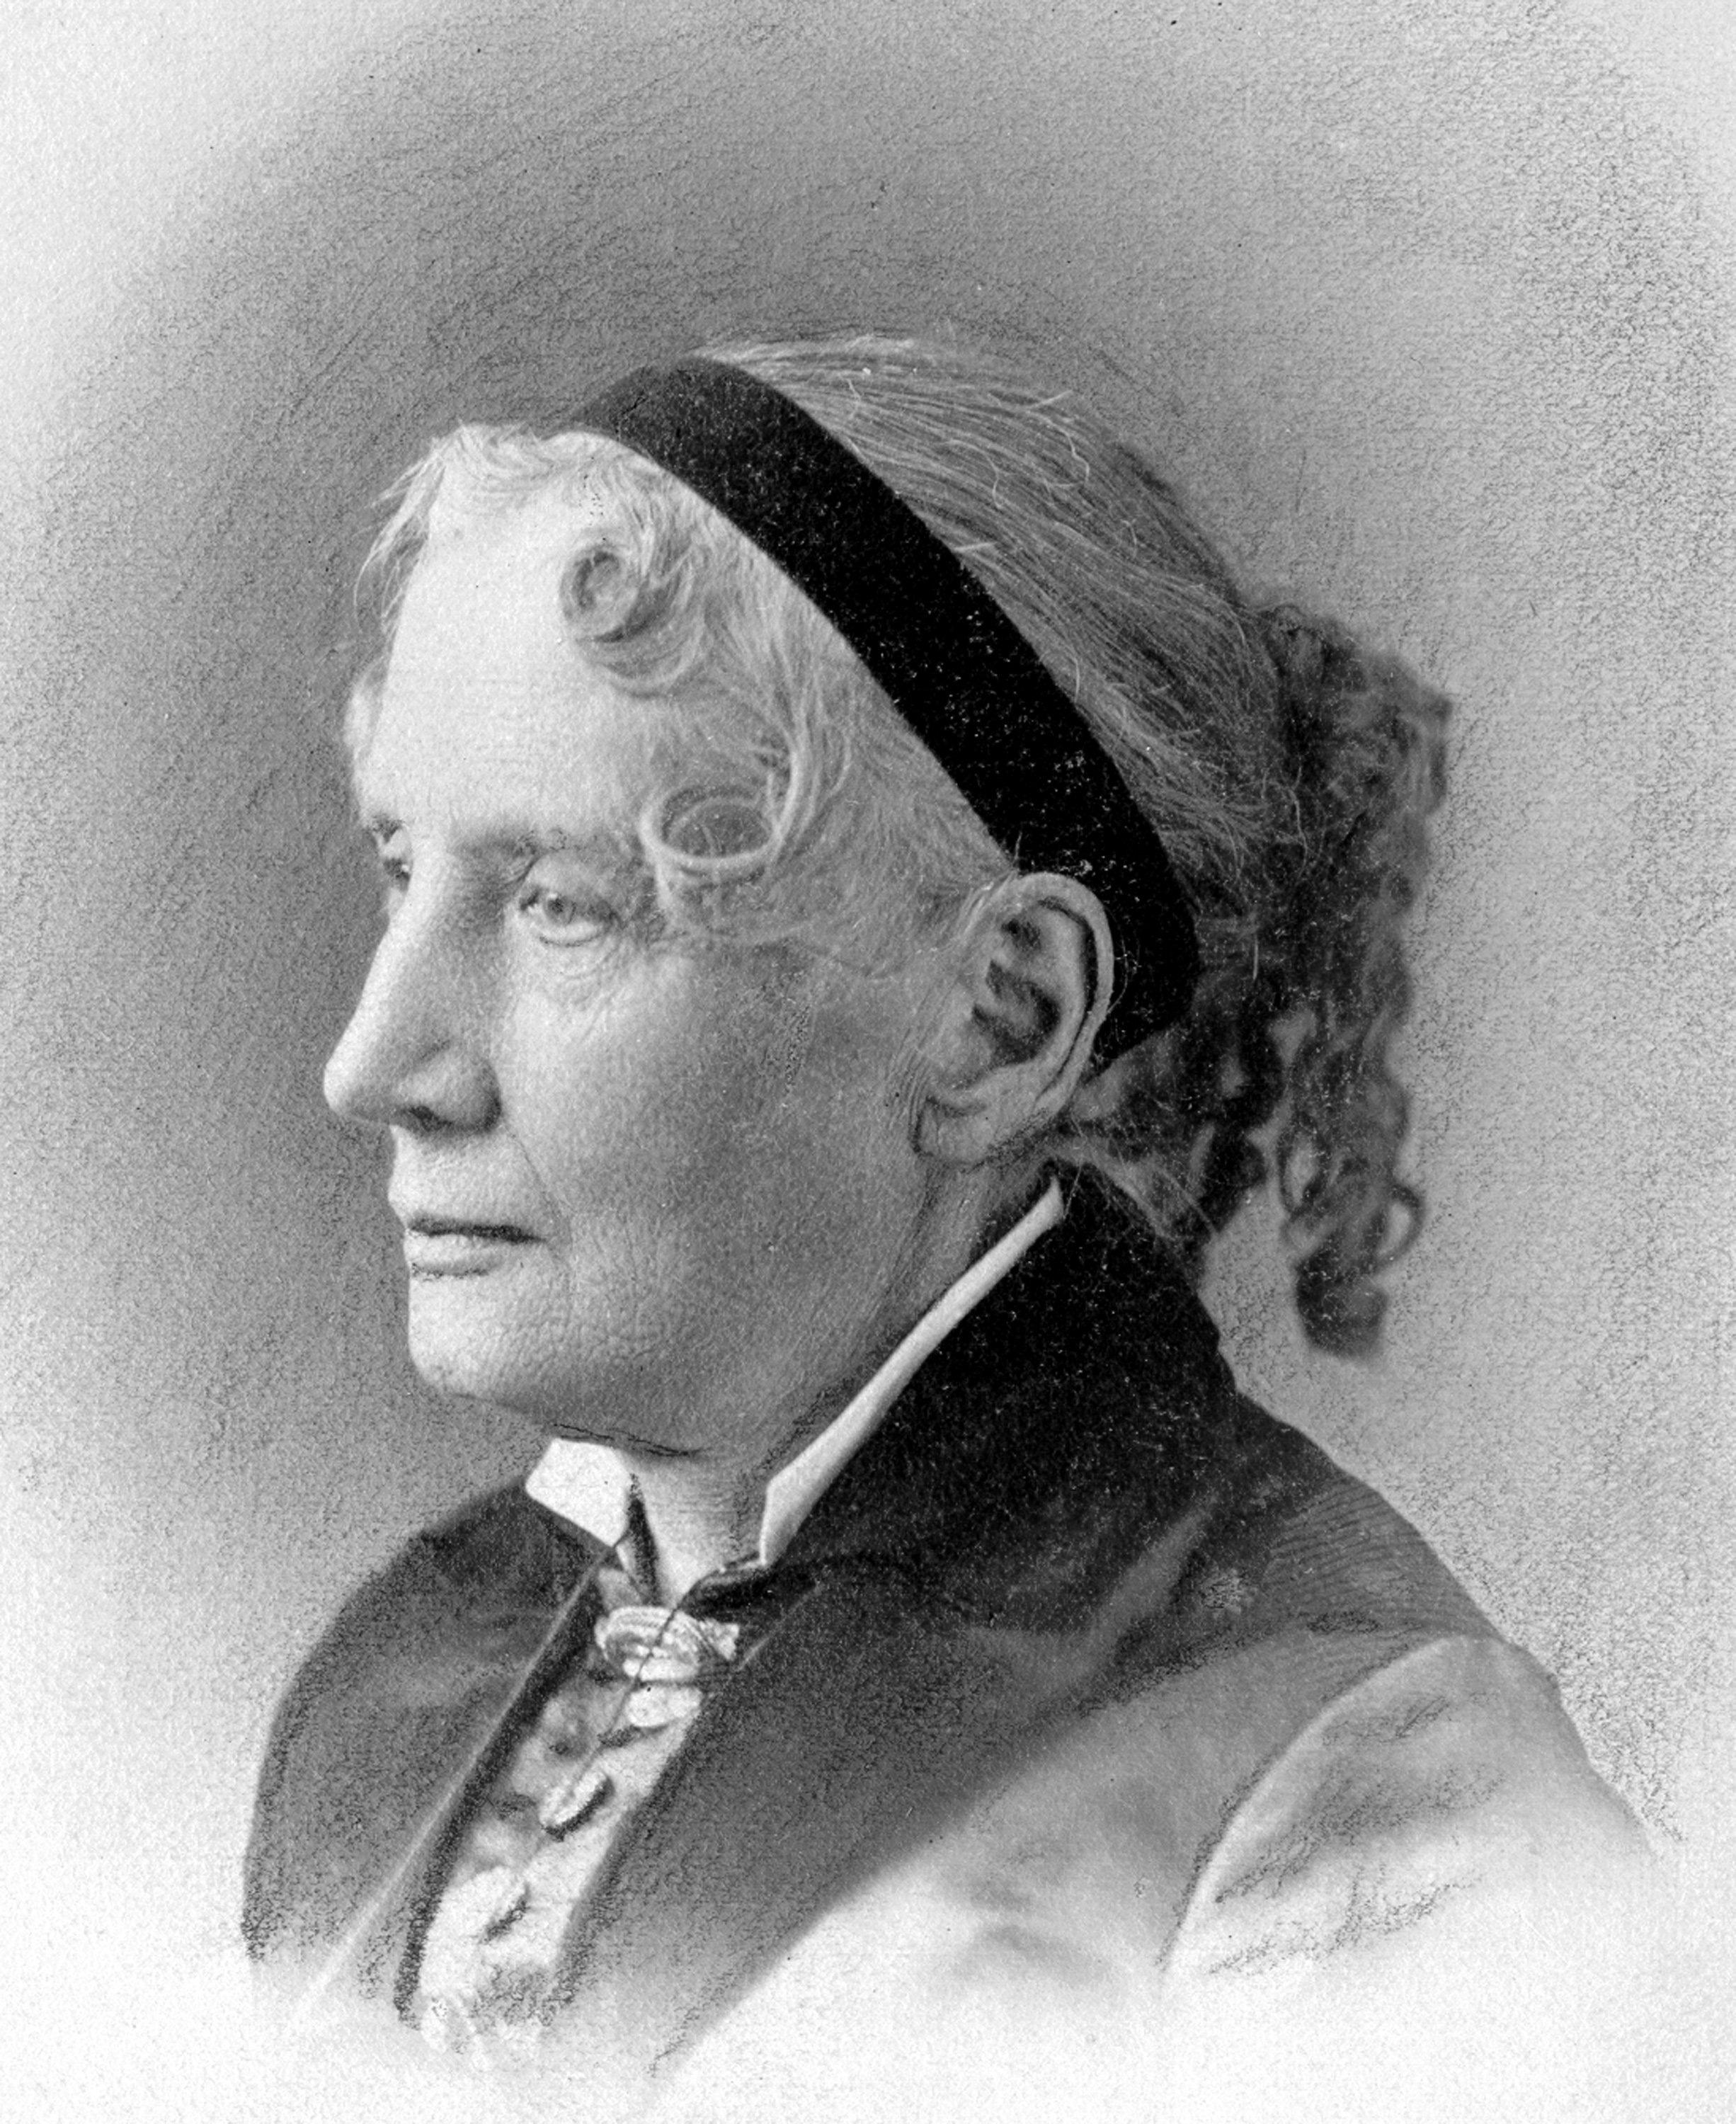 Image of Harriet Beecher Stowe.